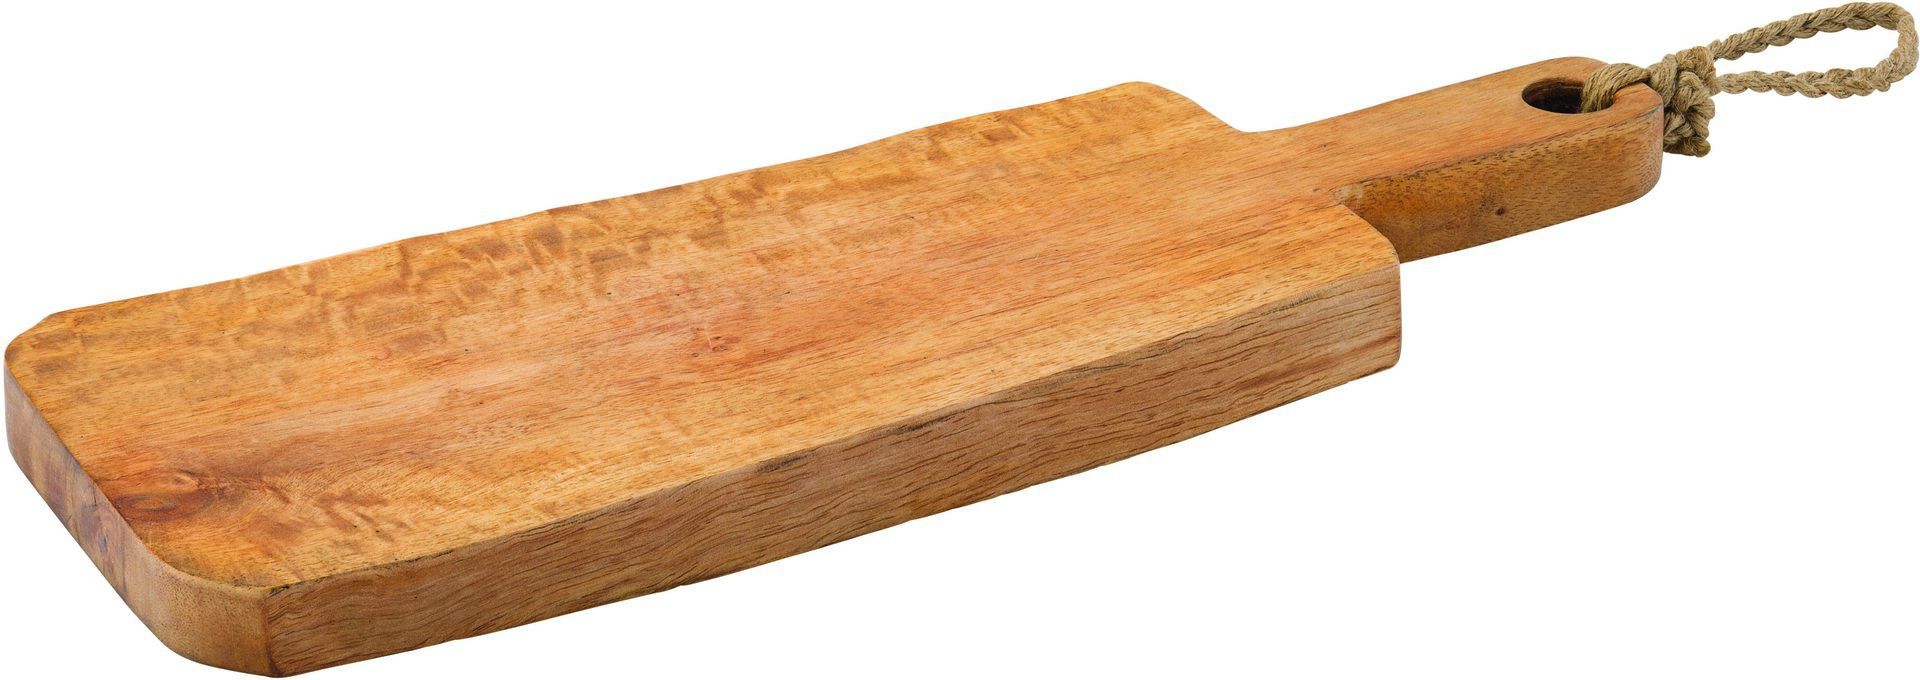 Arizona Handled Plank 16